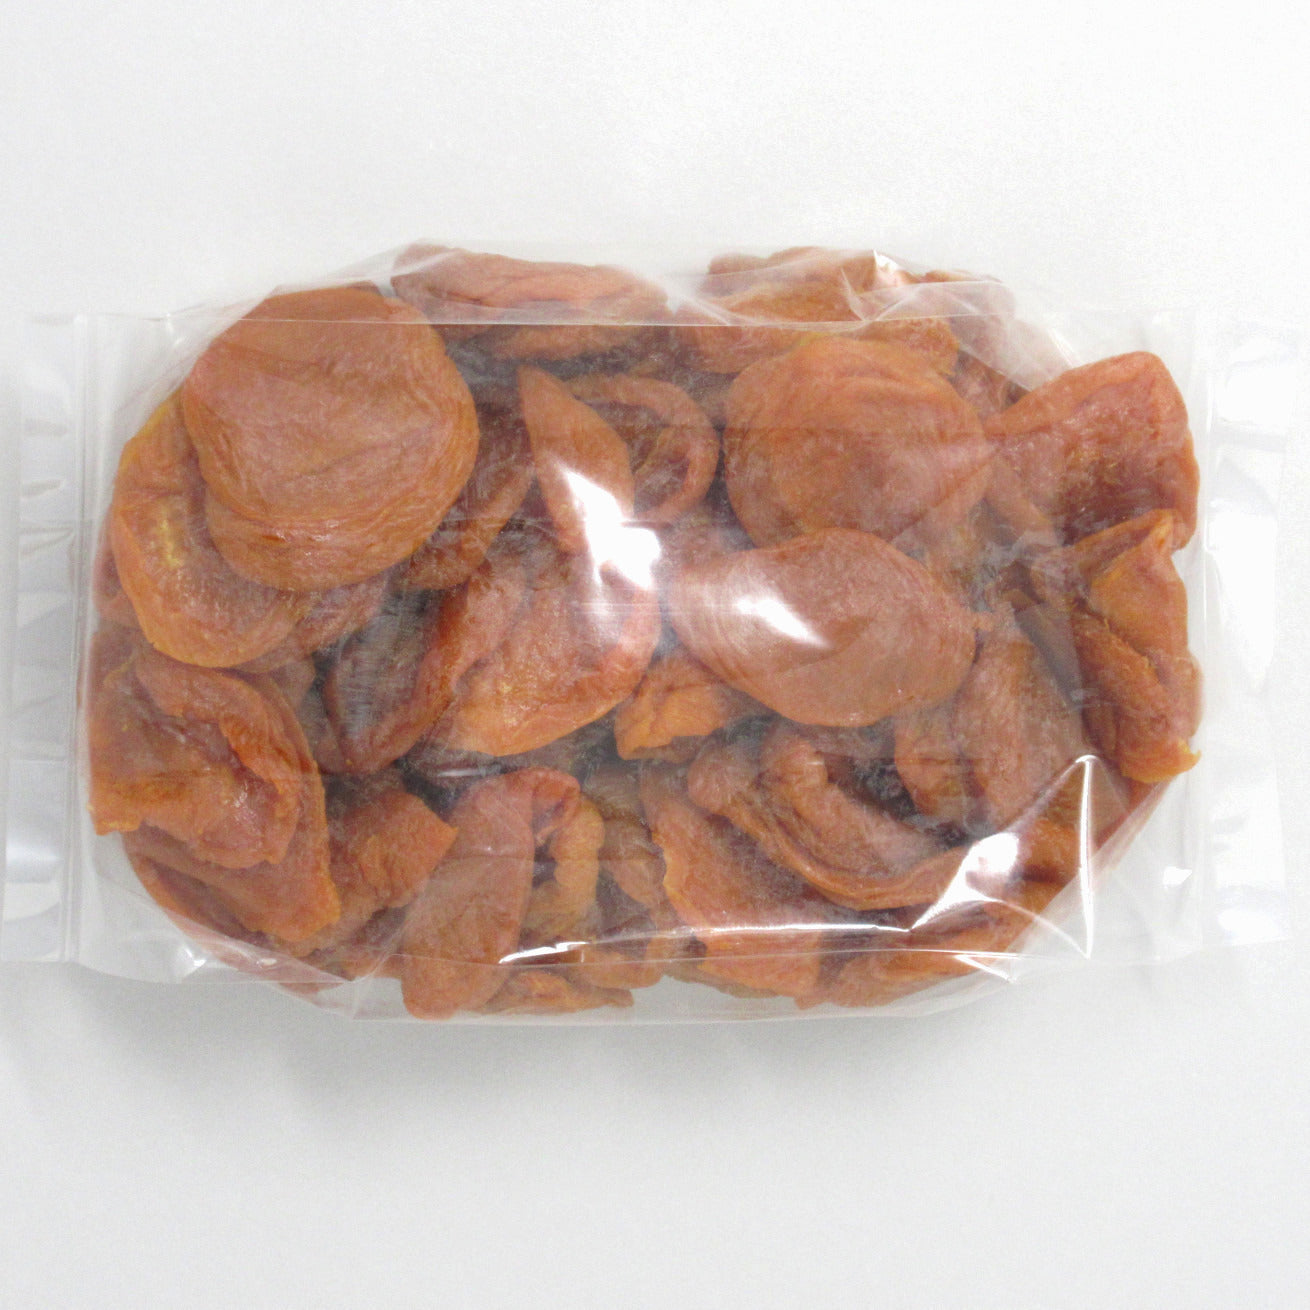 Flour Barrel product image - Dried Apricots (Sour)